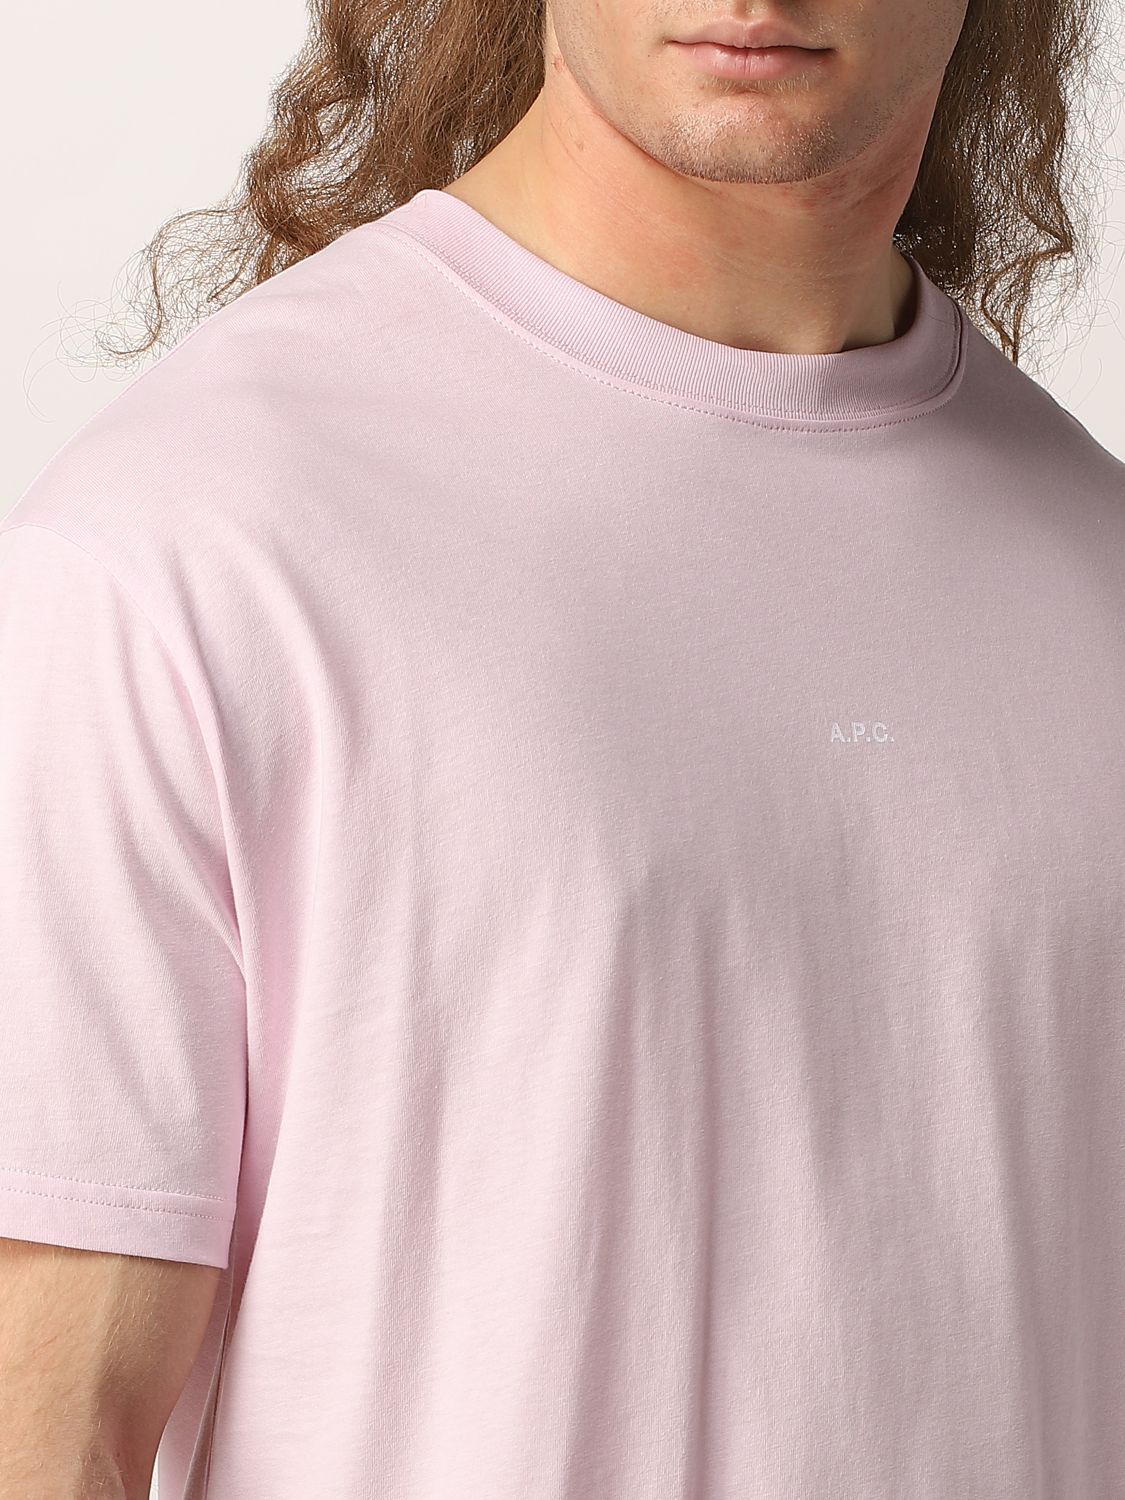 T-Shirt A.p.c.: A.p.c. Herren T-Shirt pink 4